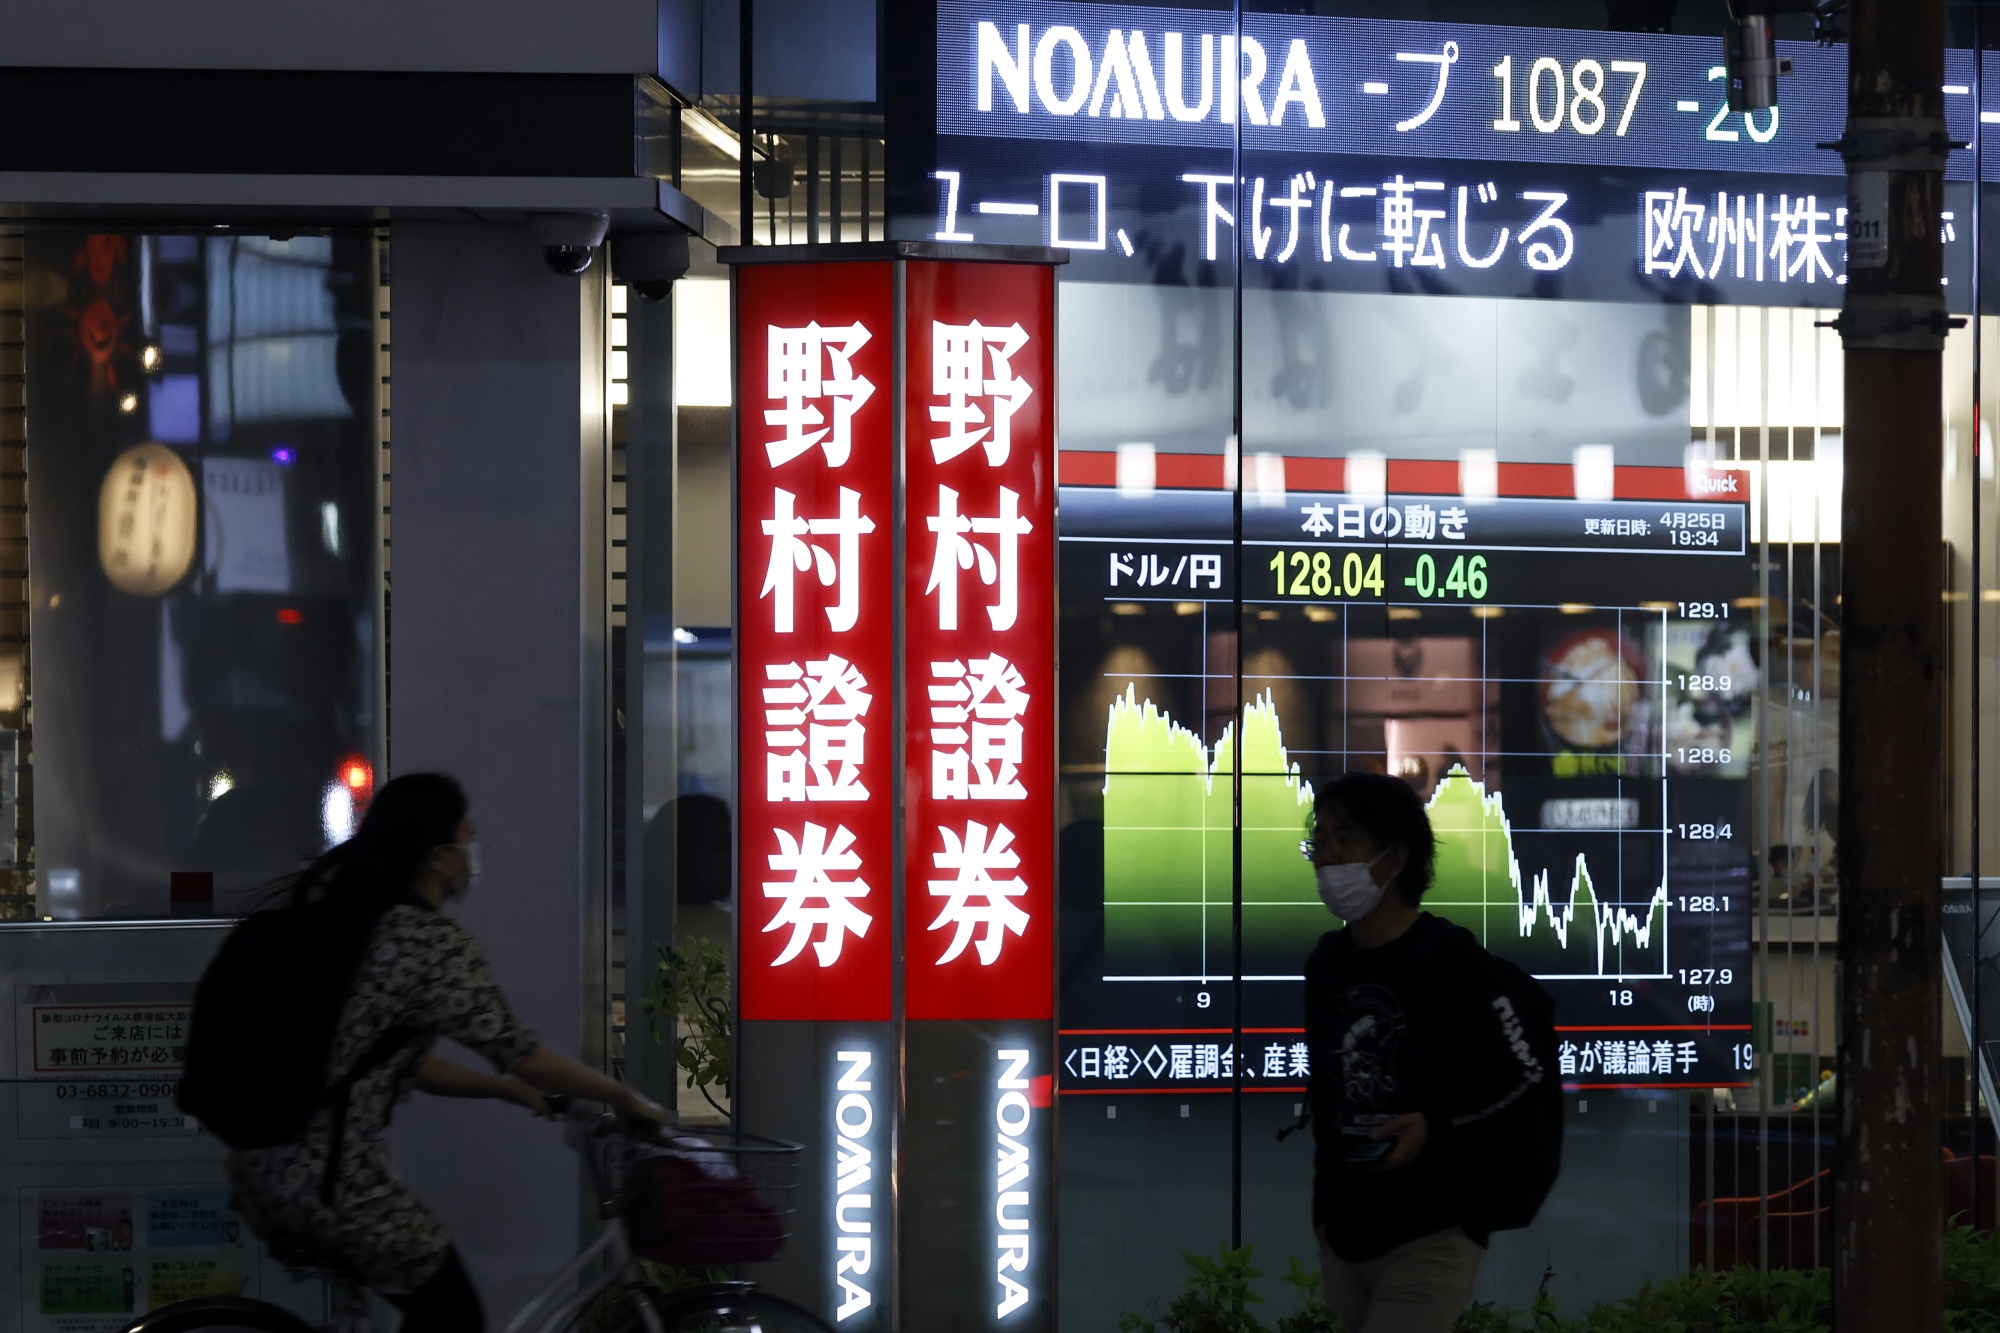 شركة الخدمات المالية اليابانية نومورا هولدنجز تسرح عدداً من موظفيها